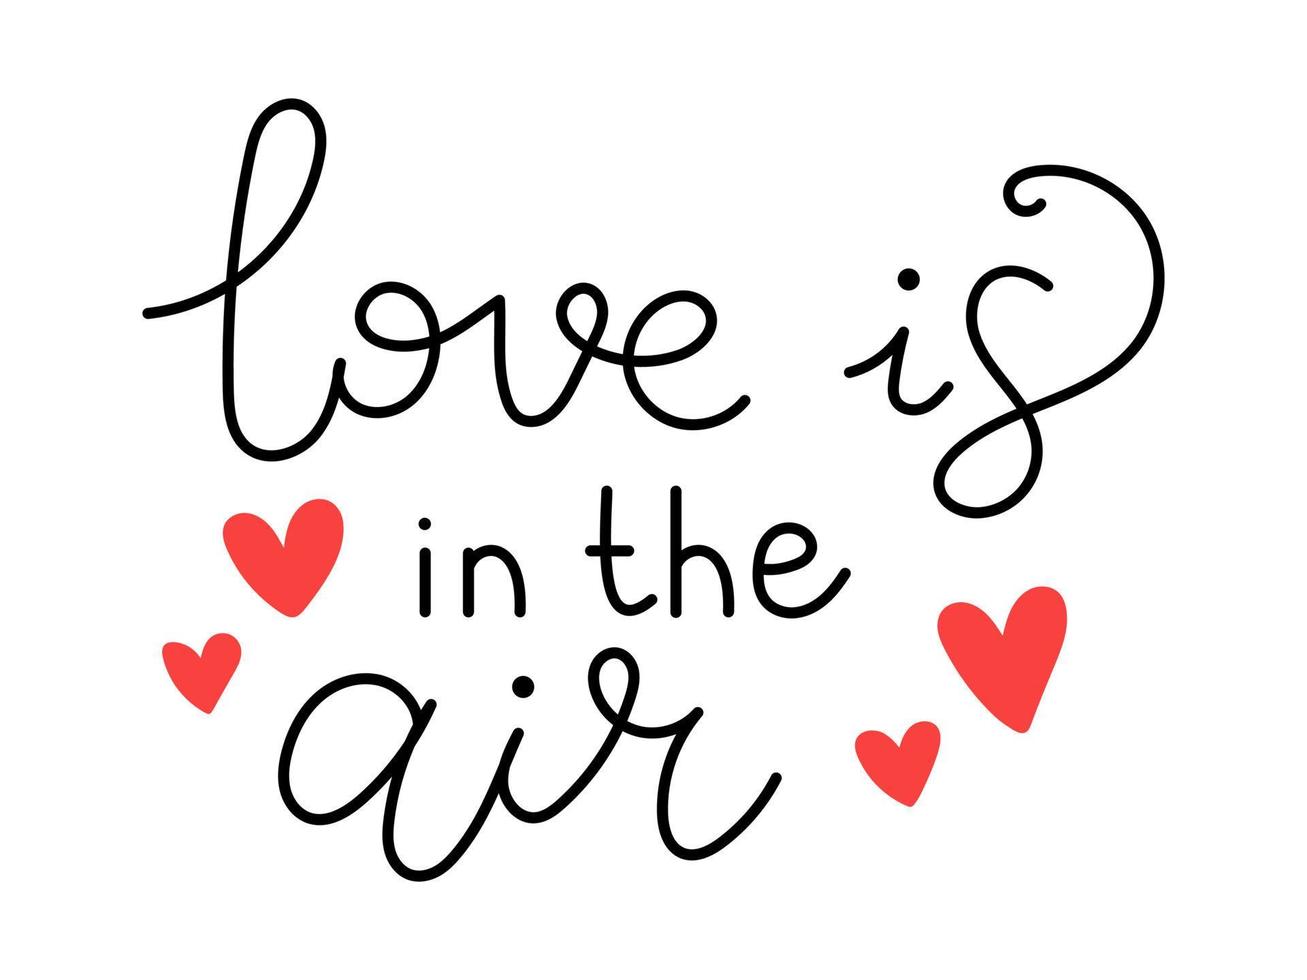 vektor valentines dag handskriven text fras. kärlek är i de luft text. romantisk citat för hälsning kort, banderoller och Övrig design. kärlek och romantik.